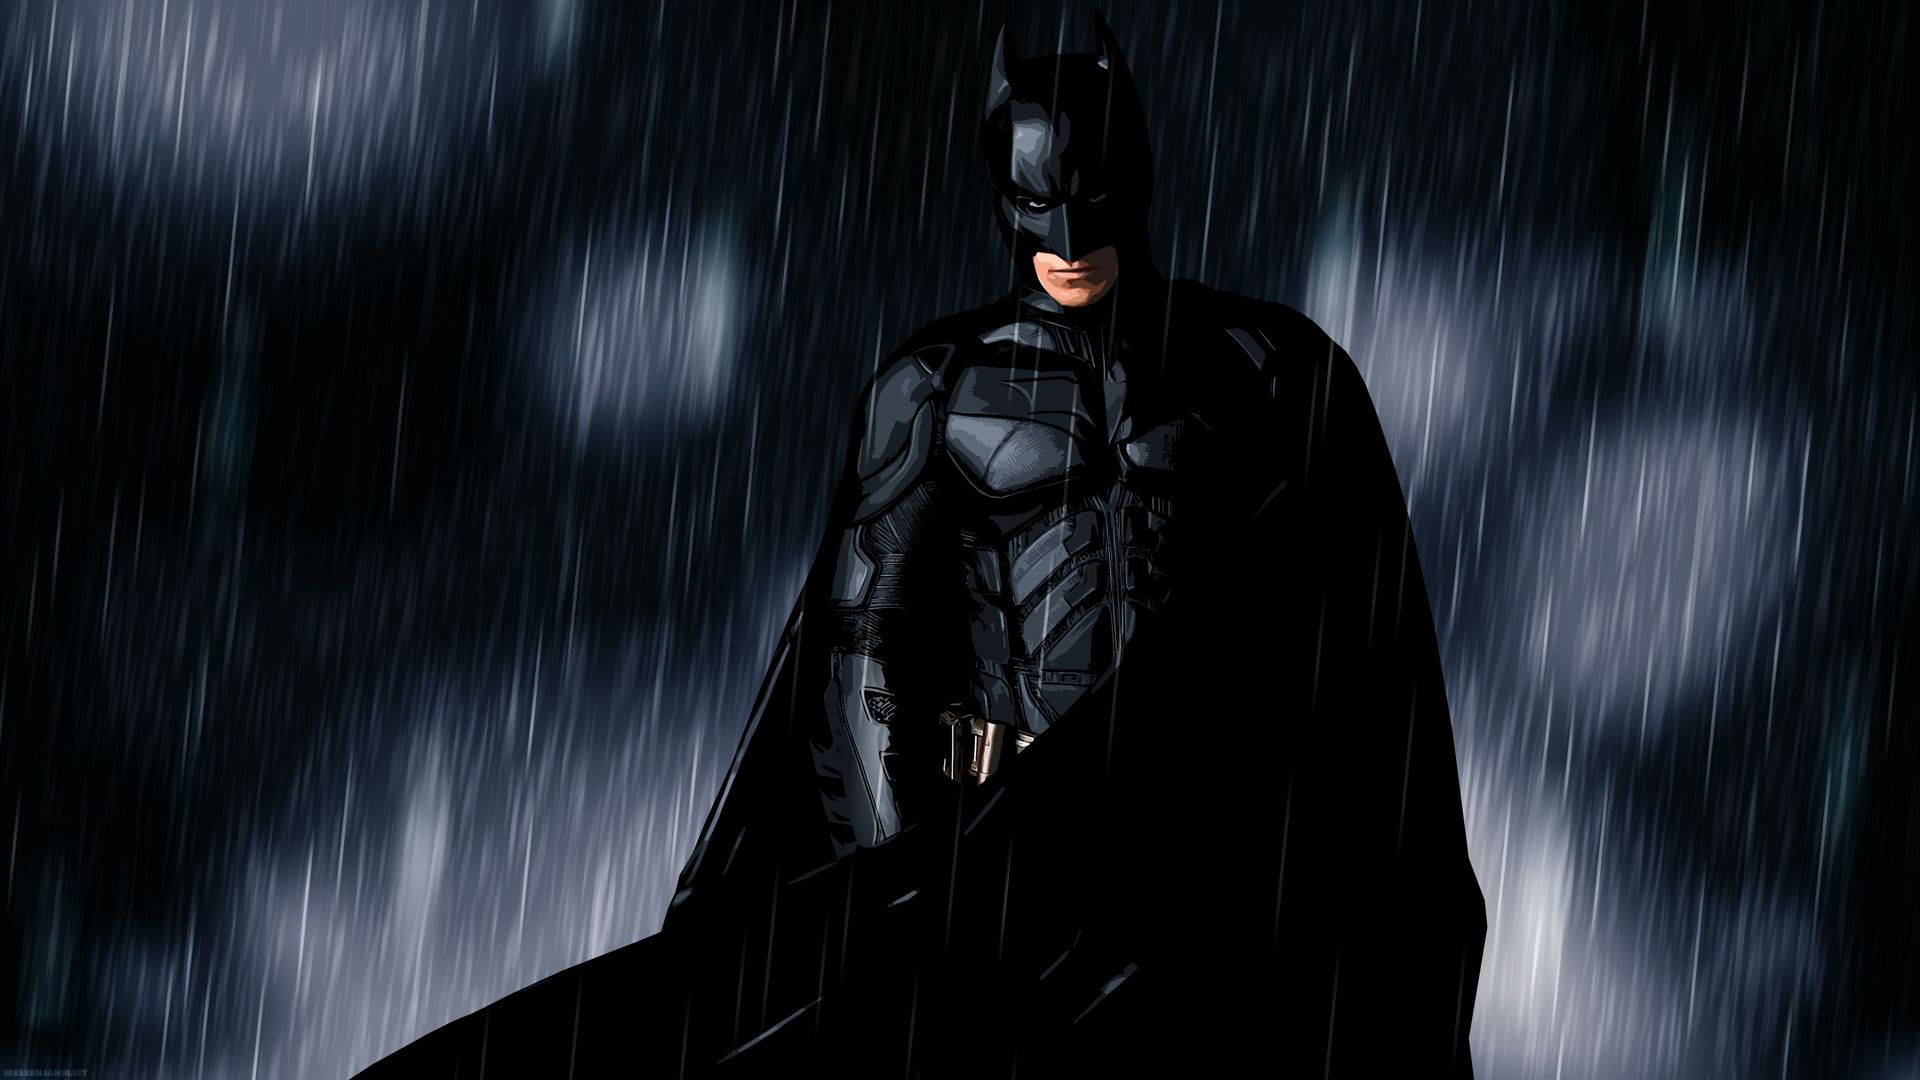 Fantastic Batman HD Wallpaper | Let's Talk About